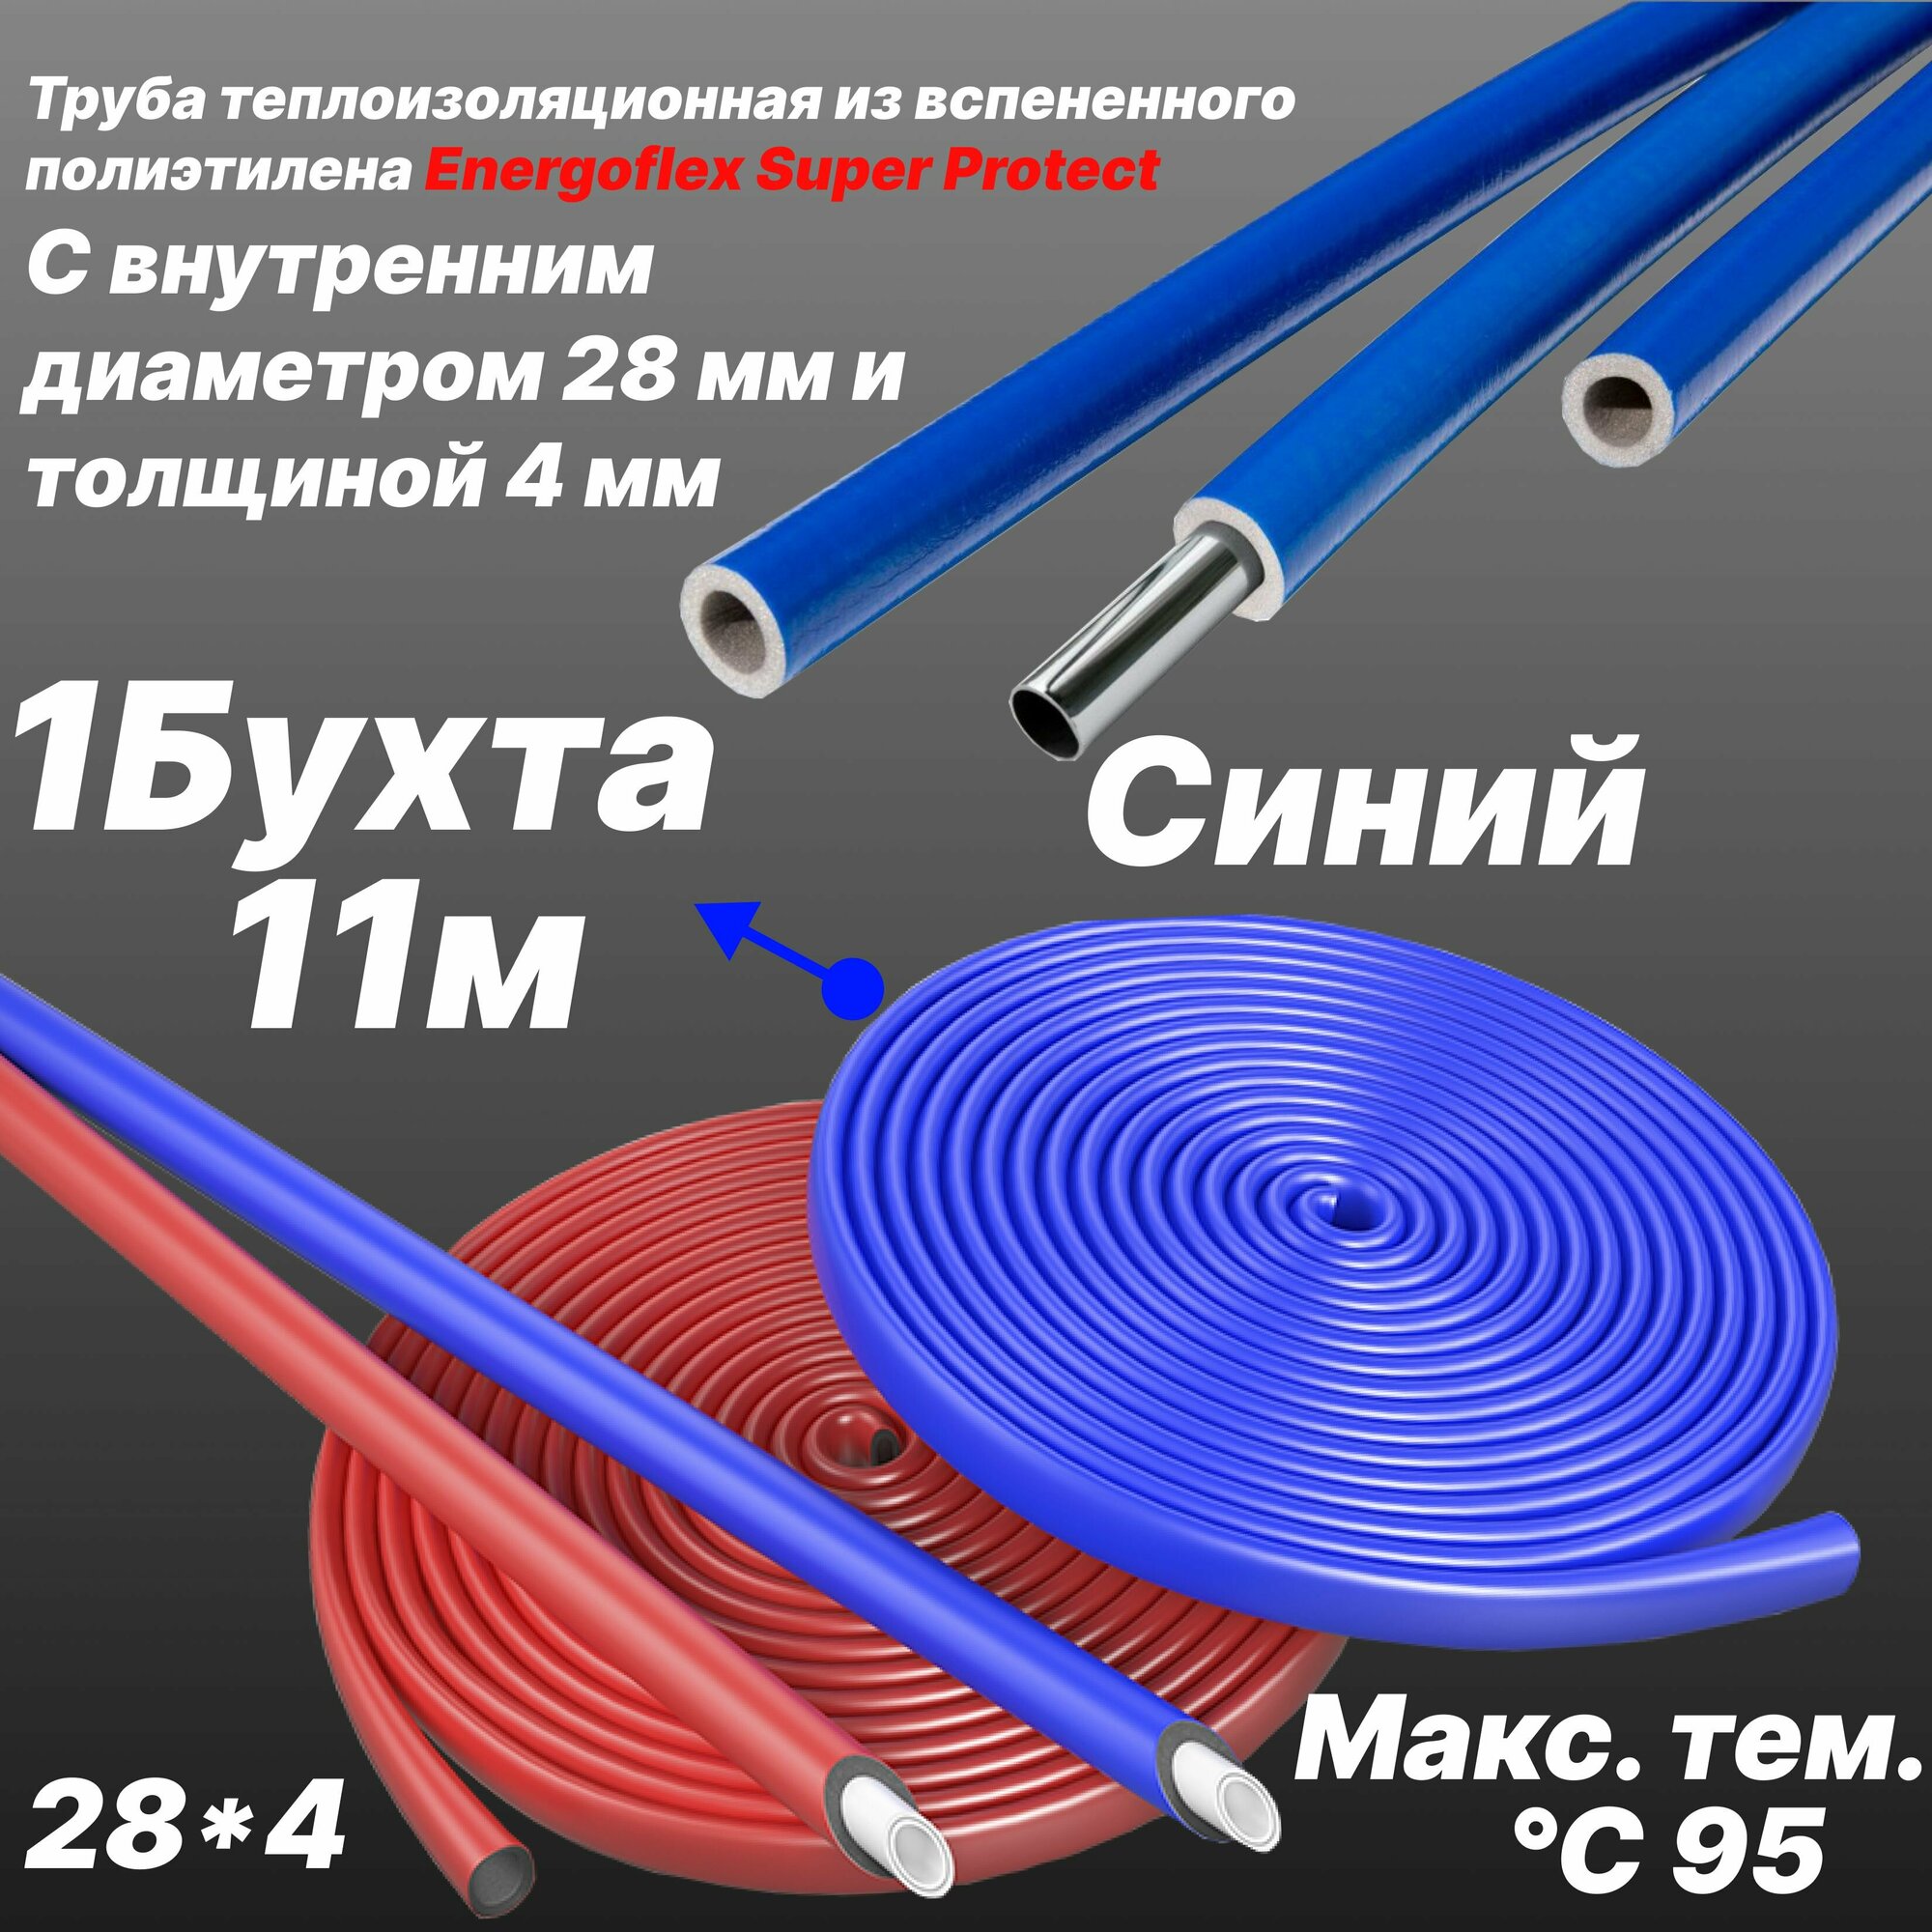 Труба теплоизоляционная из вспененного полиэтилена 28/4 -Синий- Energoflex Super Protect - 22 м (2 Бухти)